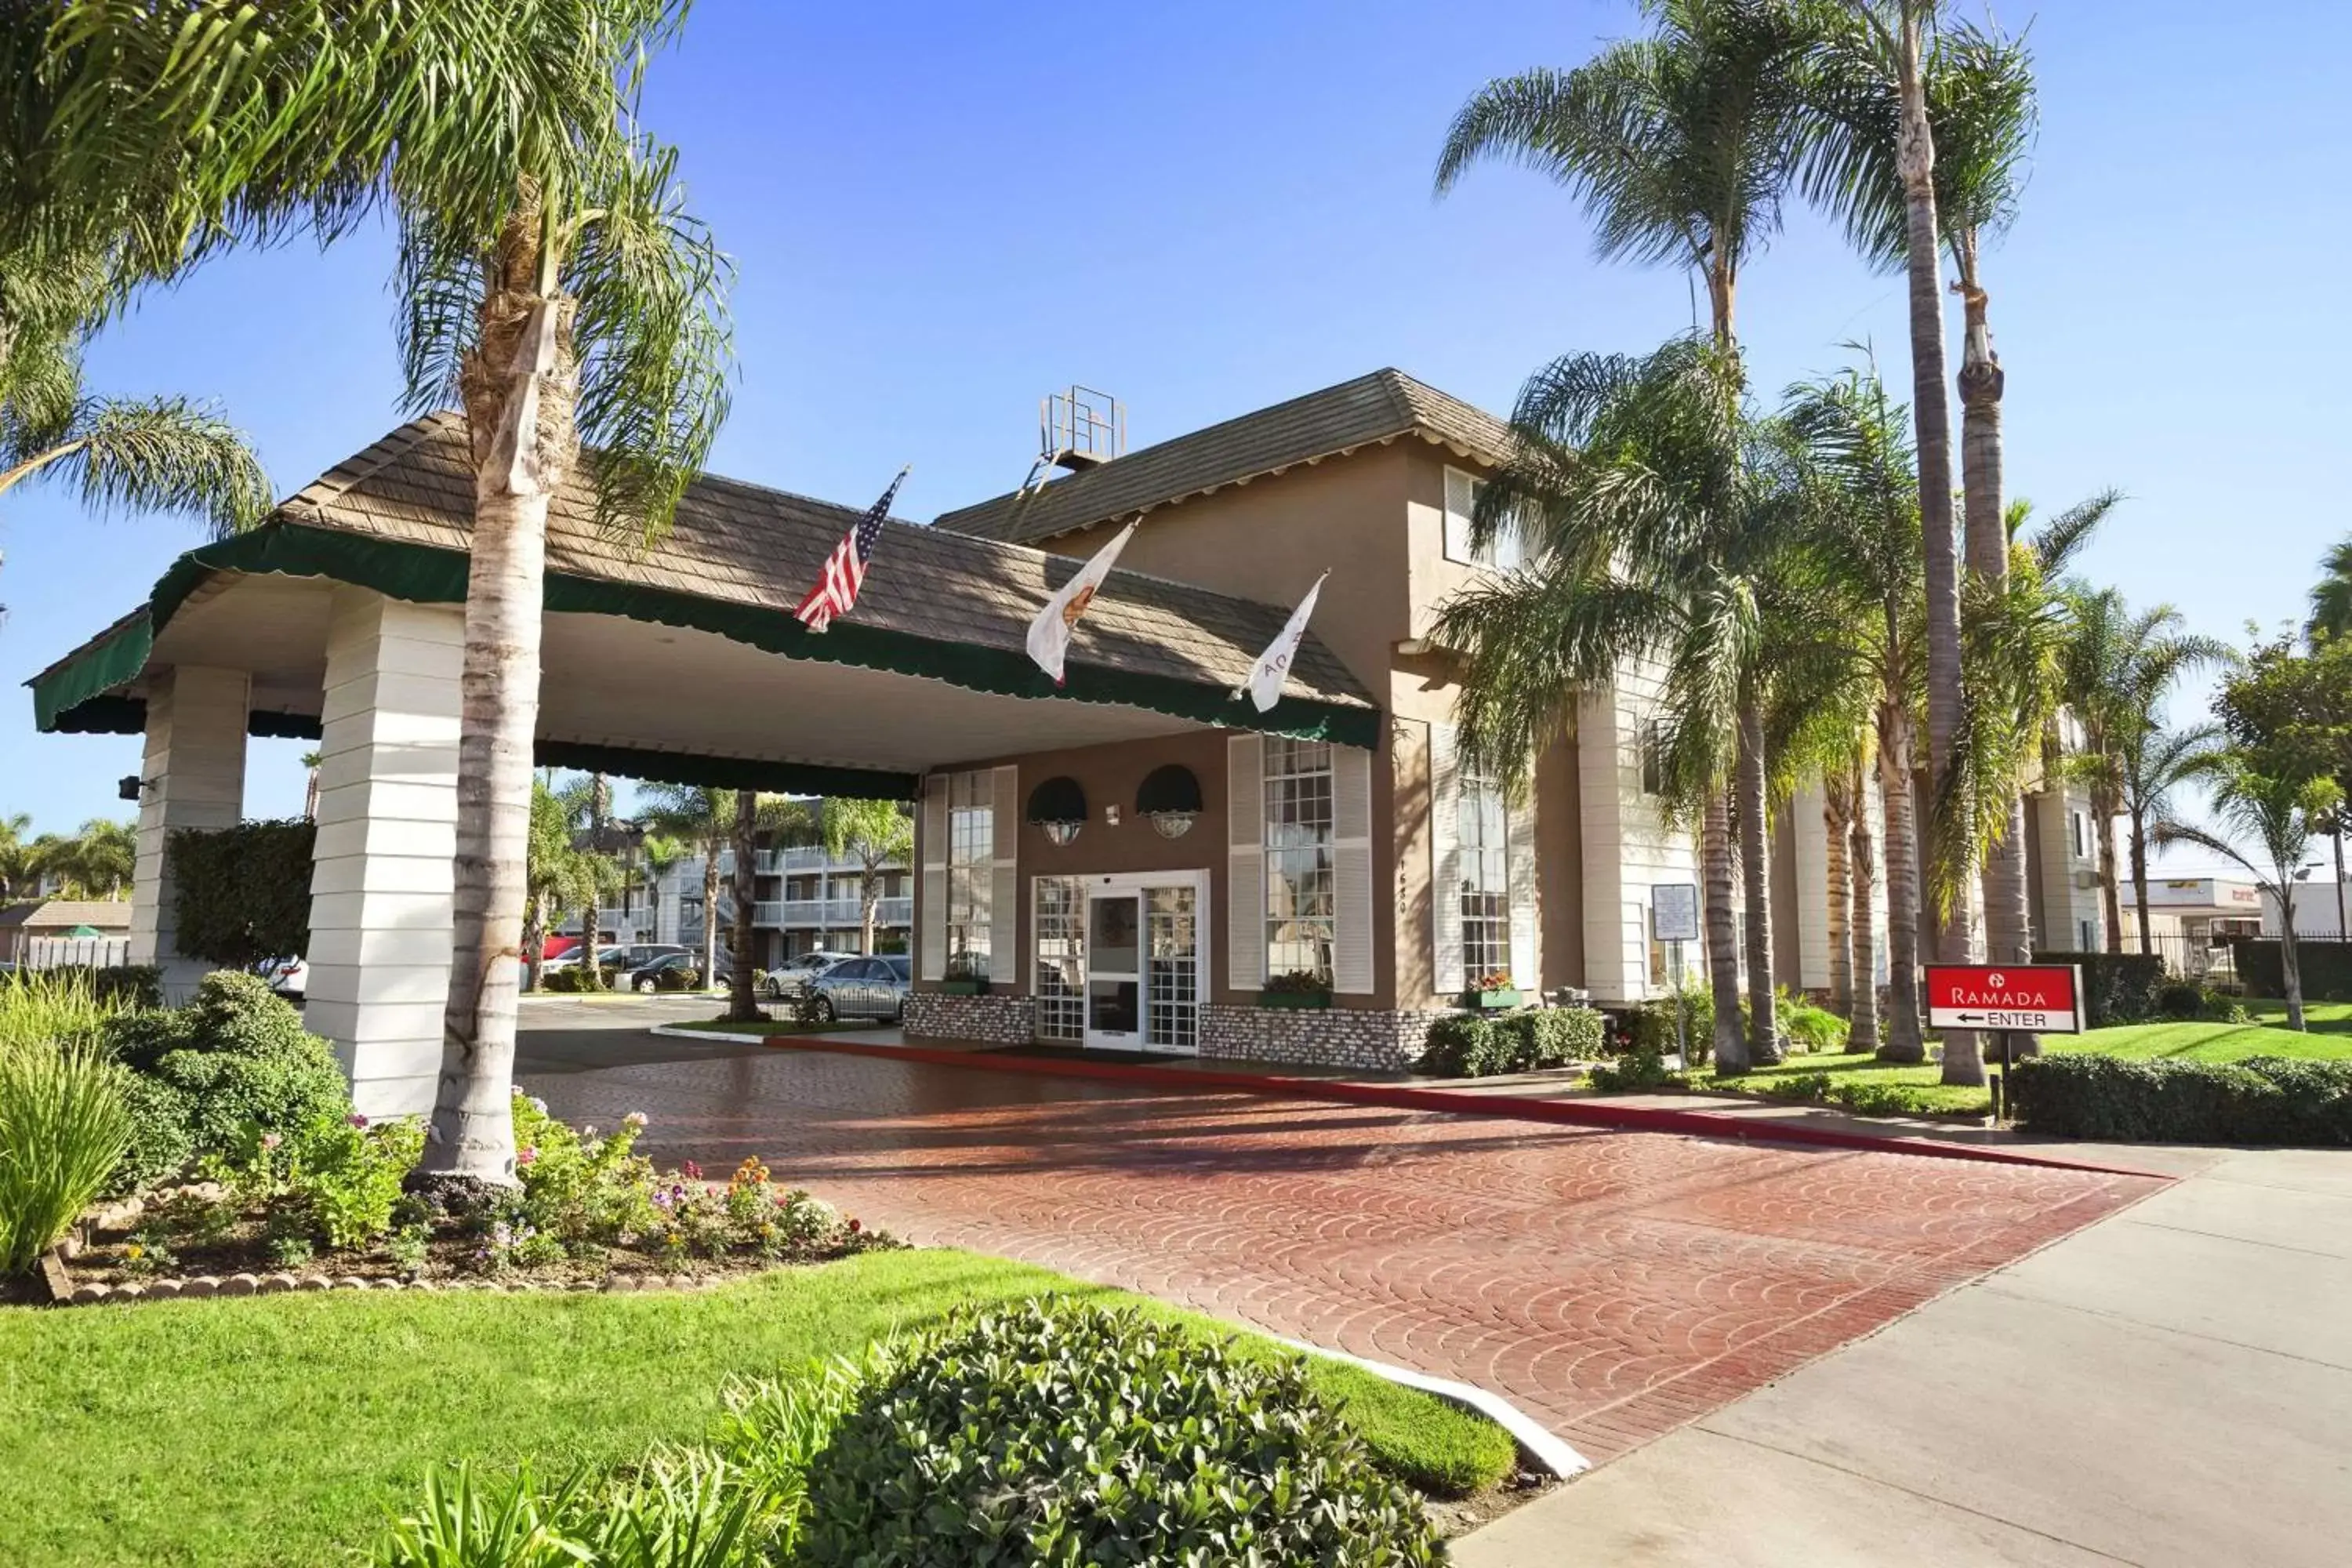 Property Building in Ramada by Wyndham Costa Mesa/Newport Beach